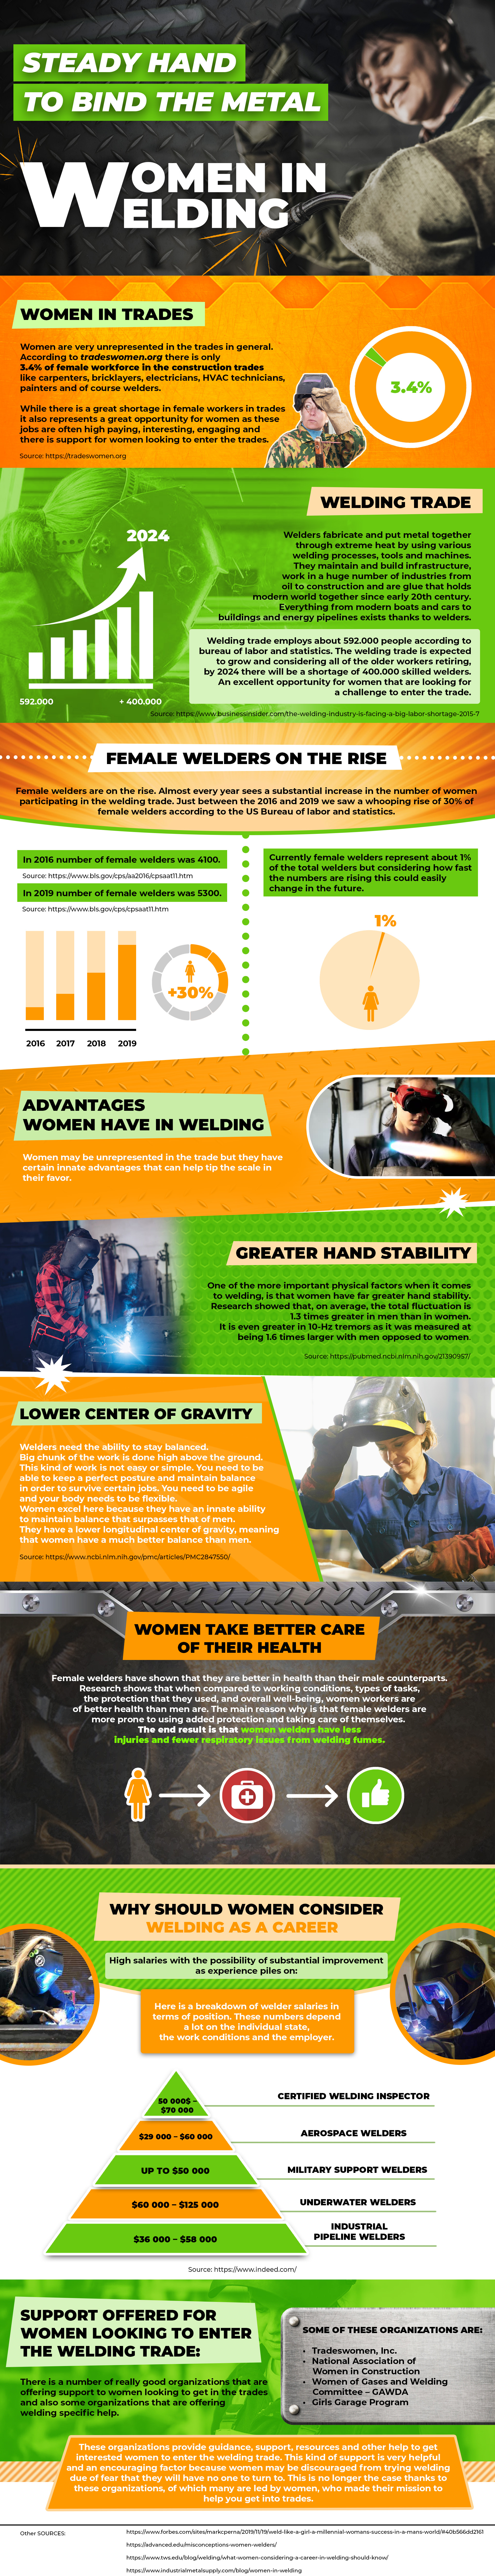 焊接行业的女性